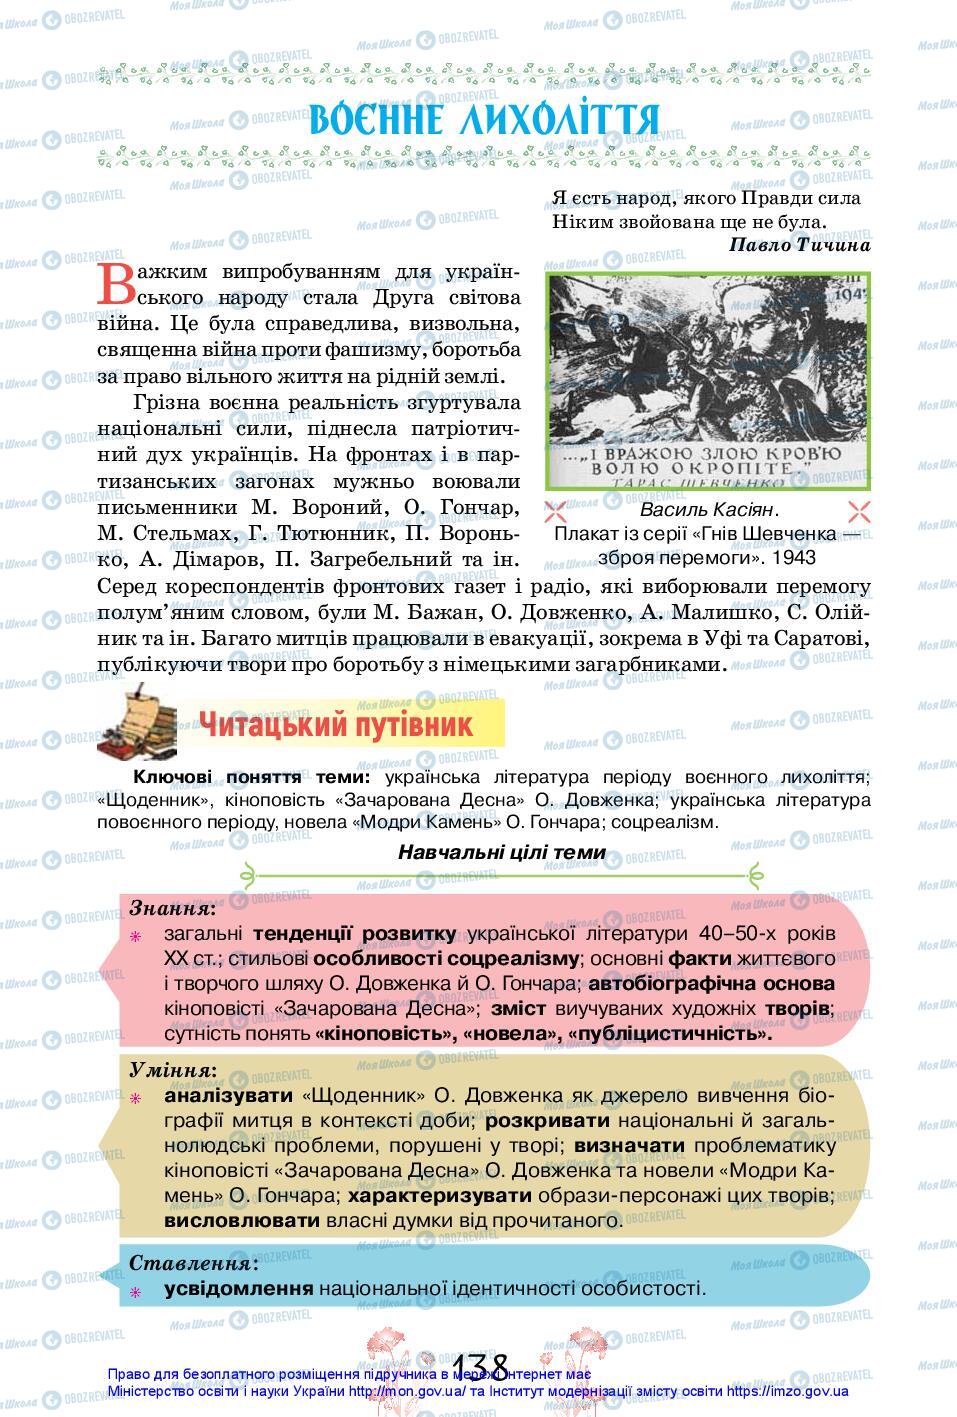 Підручники Українська література 11 клас сторінка 138